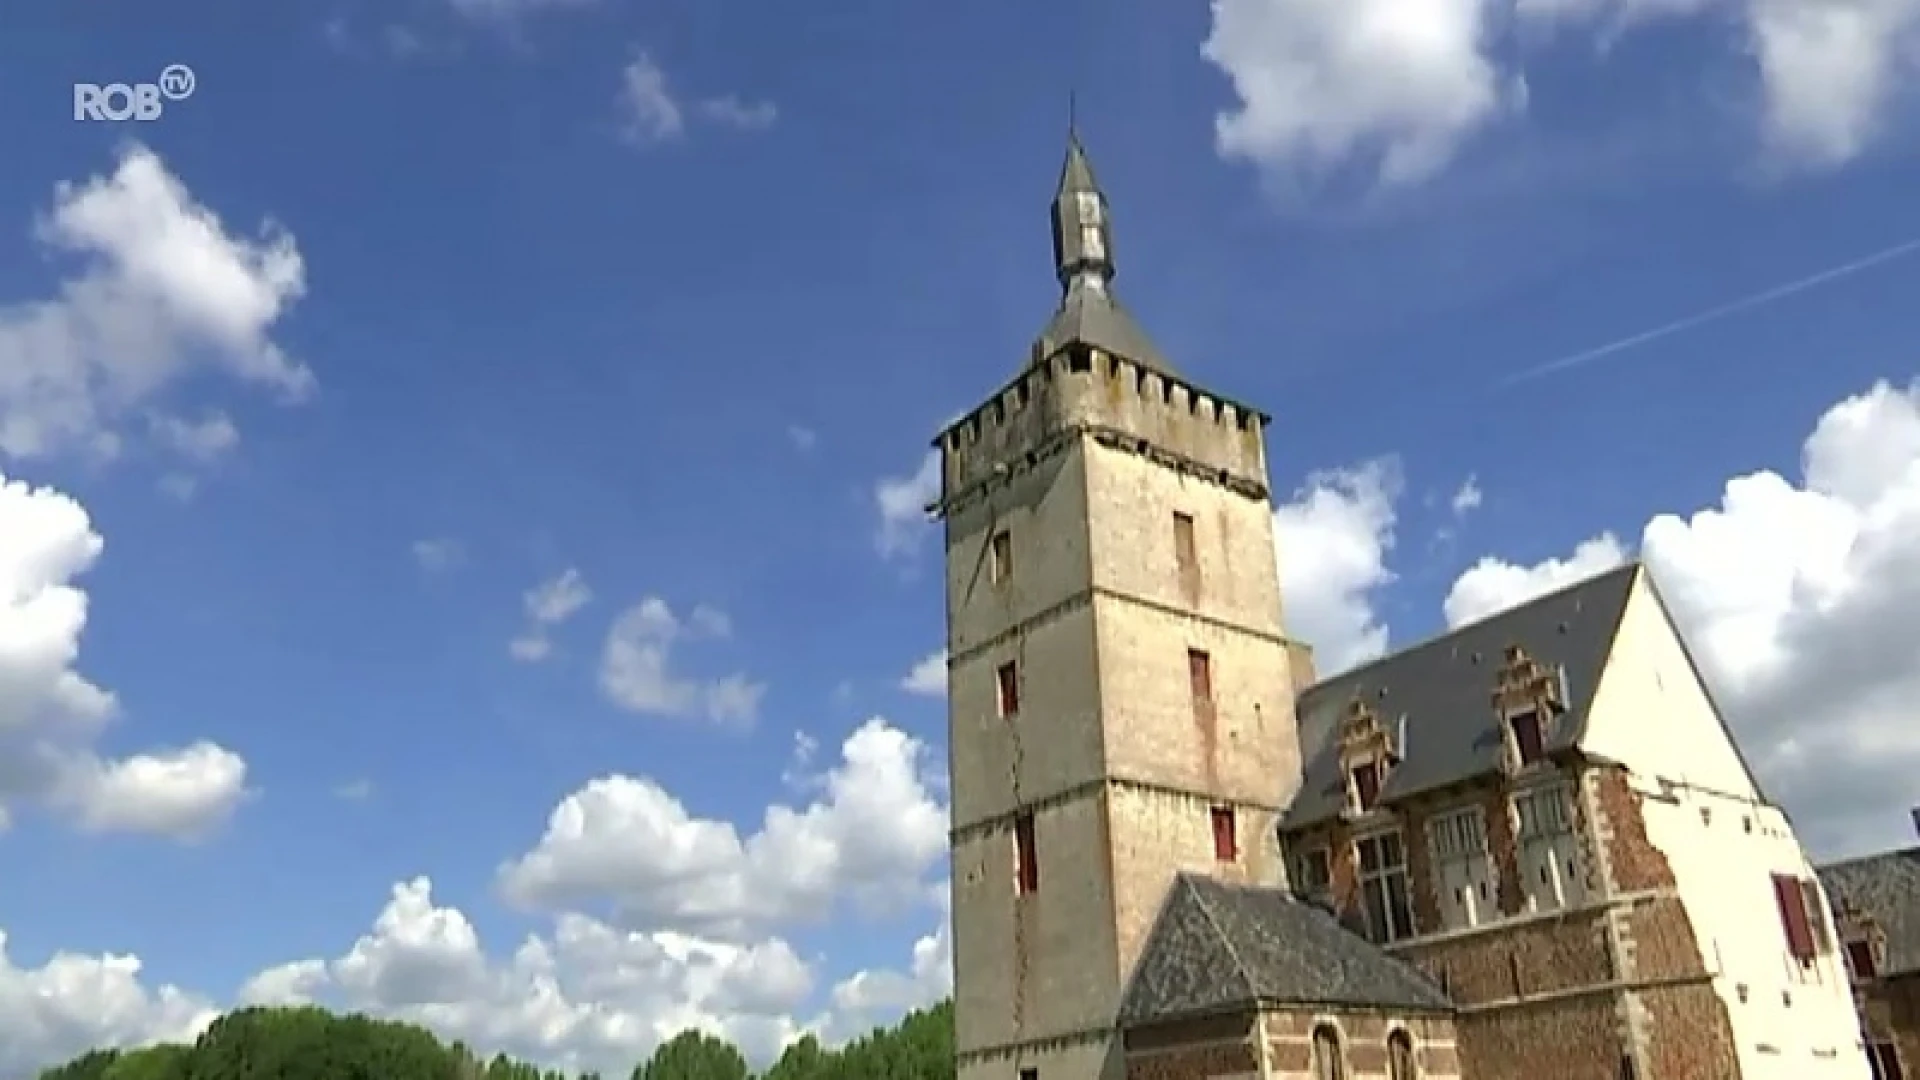 Restauratie kasteel van Horst van start: iconische torenspits wordt toeristische trekpleister in de vijver